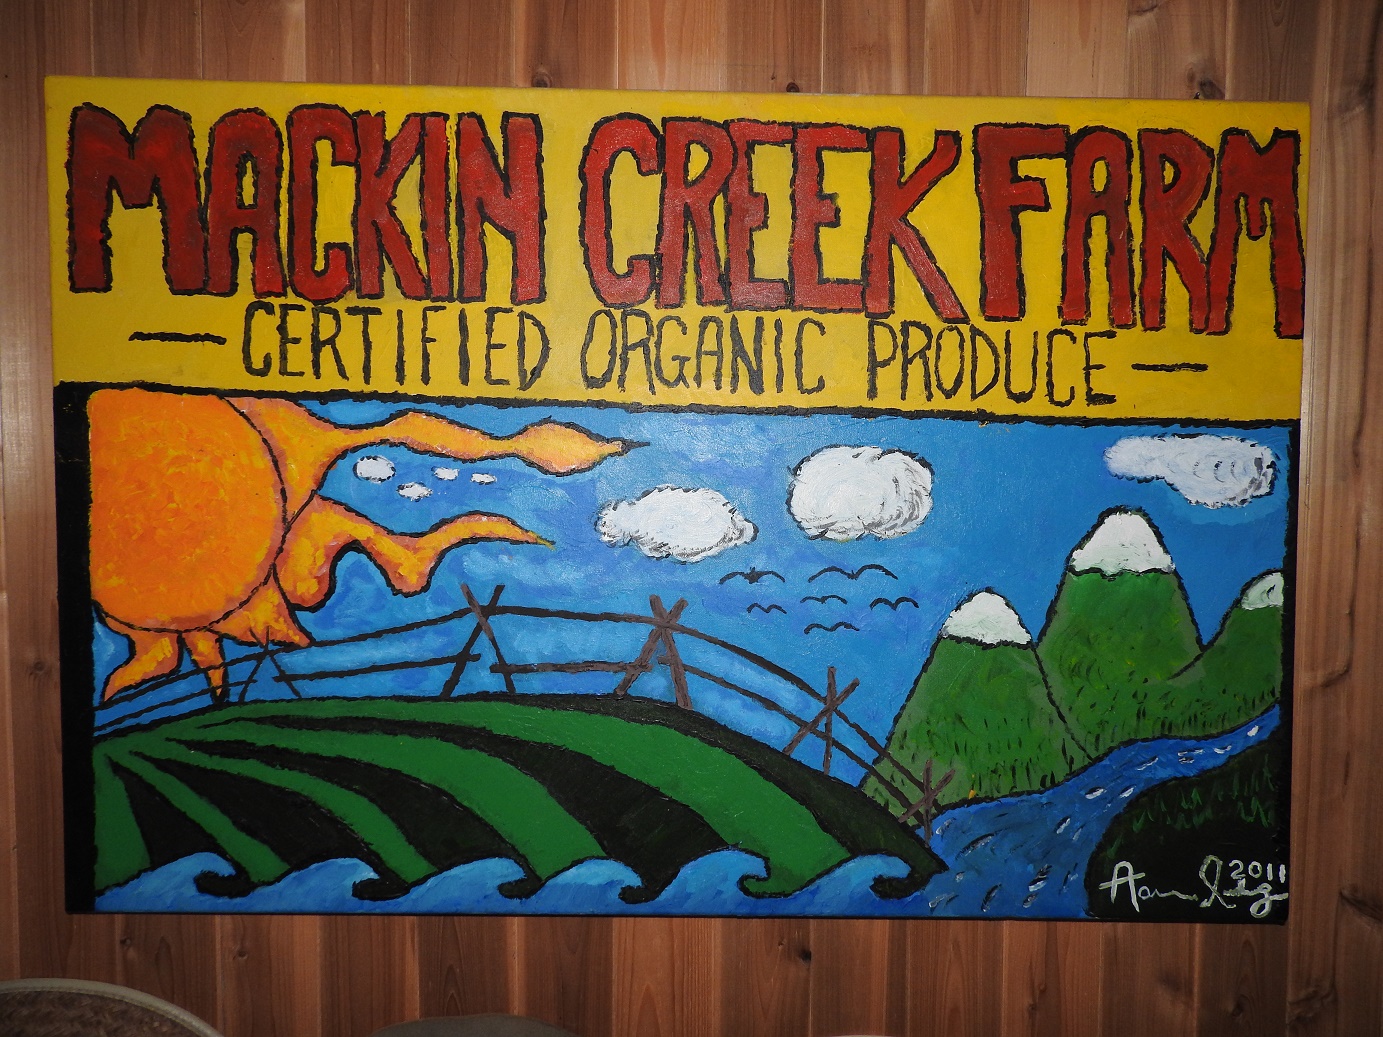 Mackin Creek logo